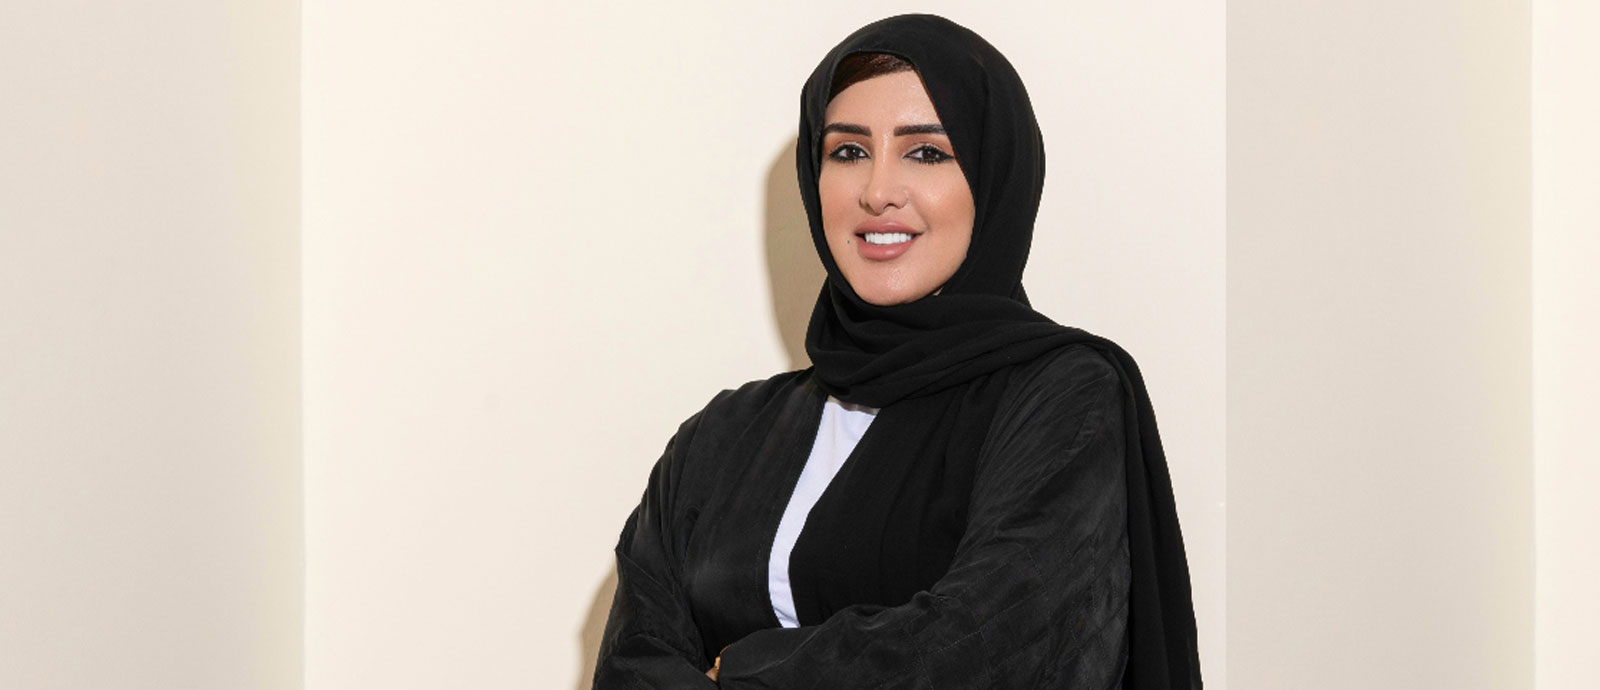  السيدة عفراء النعيمي، المدير التنفيذي لمعهد جسور،